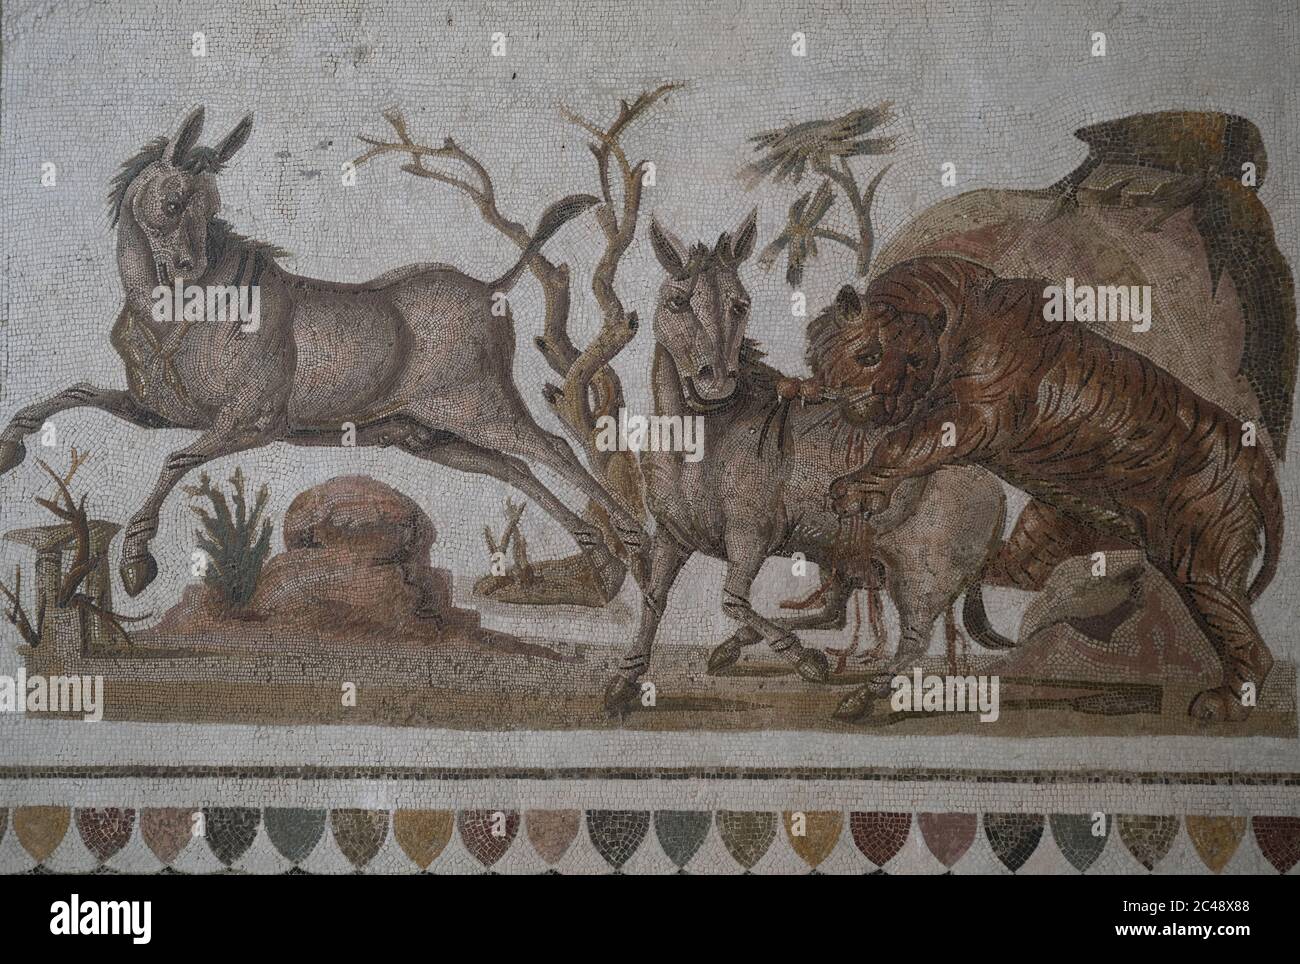 Mosaïque romaine datant du milieu du 2ème siècle AD abrité dans Le Musée archéologique.IT dépeint un tigre attaquant deux onageurs.El Jem, Tunisie Banque D'Images